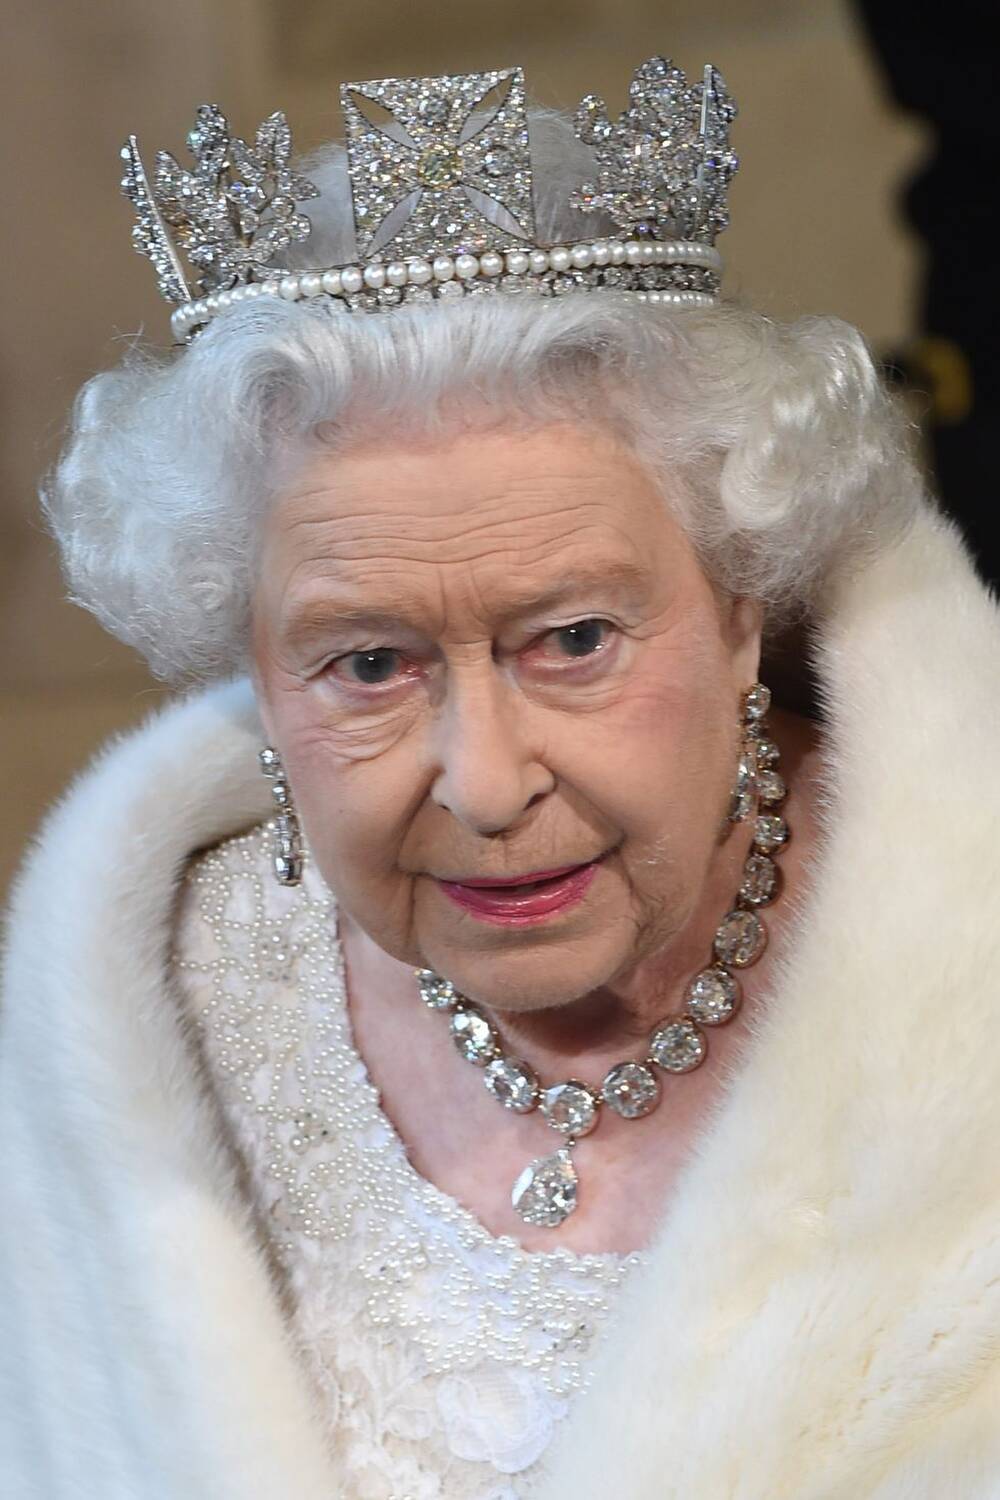 Tại Lễ khai mạc Quốc hội năm 2015, Nữ hoàng Elizabeth đã đeo State Diadem - chiếc vương miện nổi tiếng thường được bà đeo trong nhiều sự kiện chính trị, cùng với vòng cổ 22,48 carat.